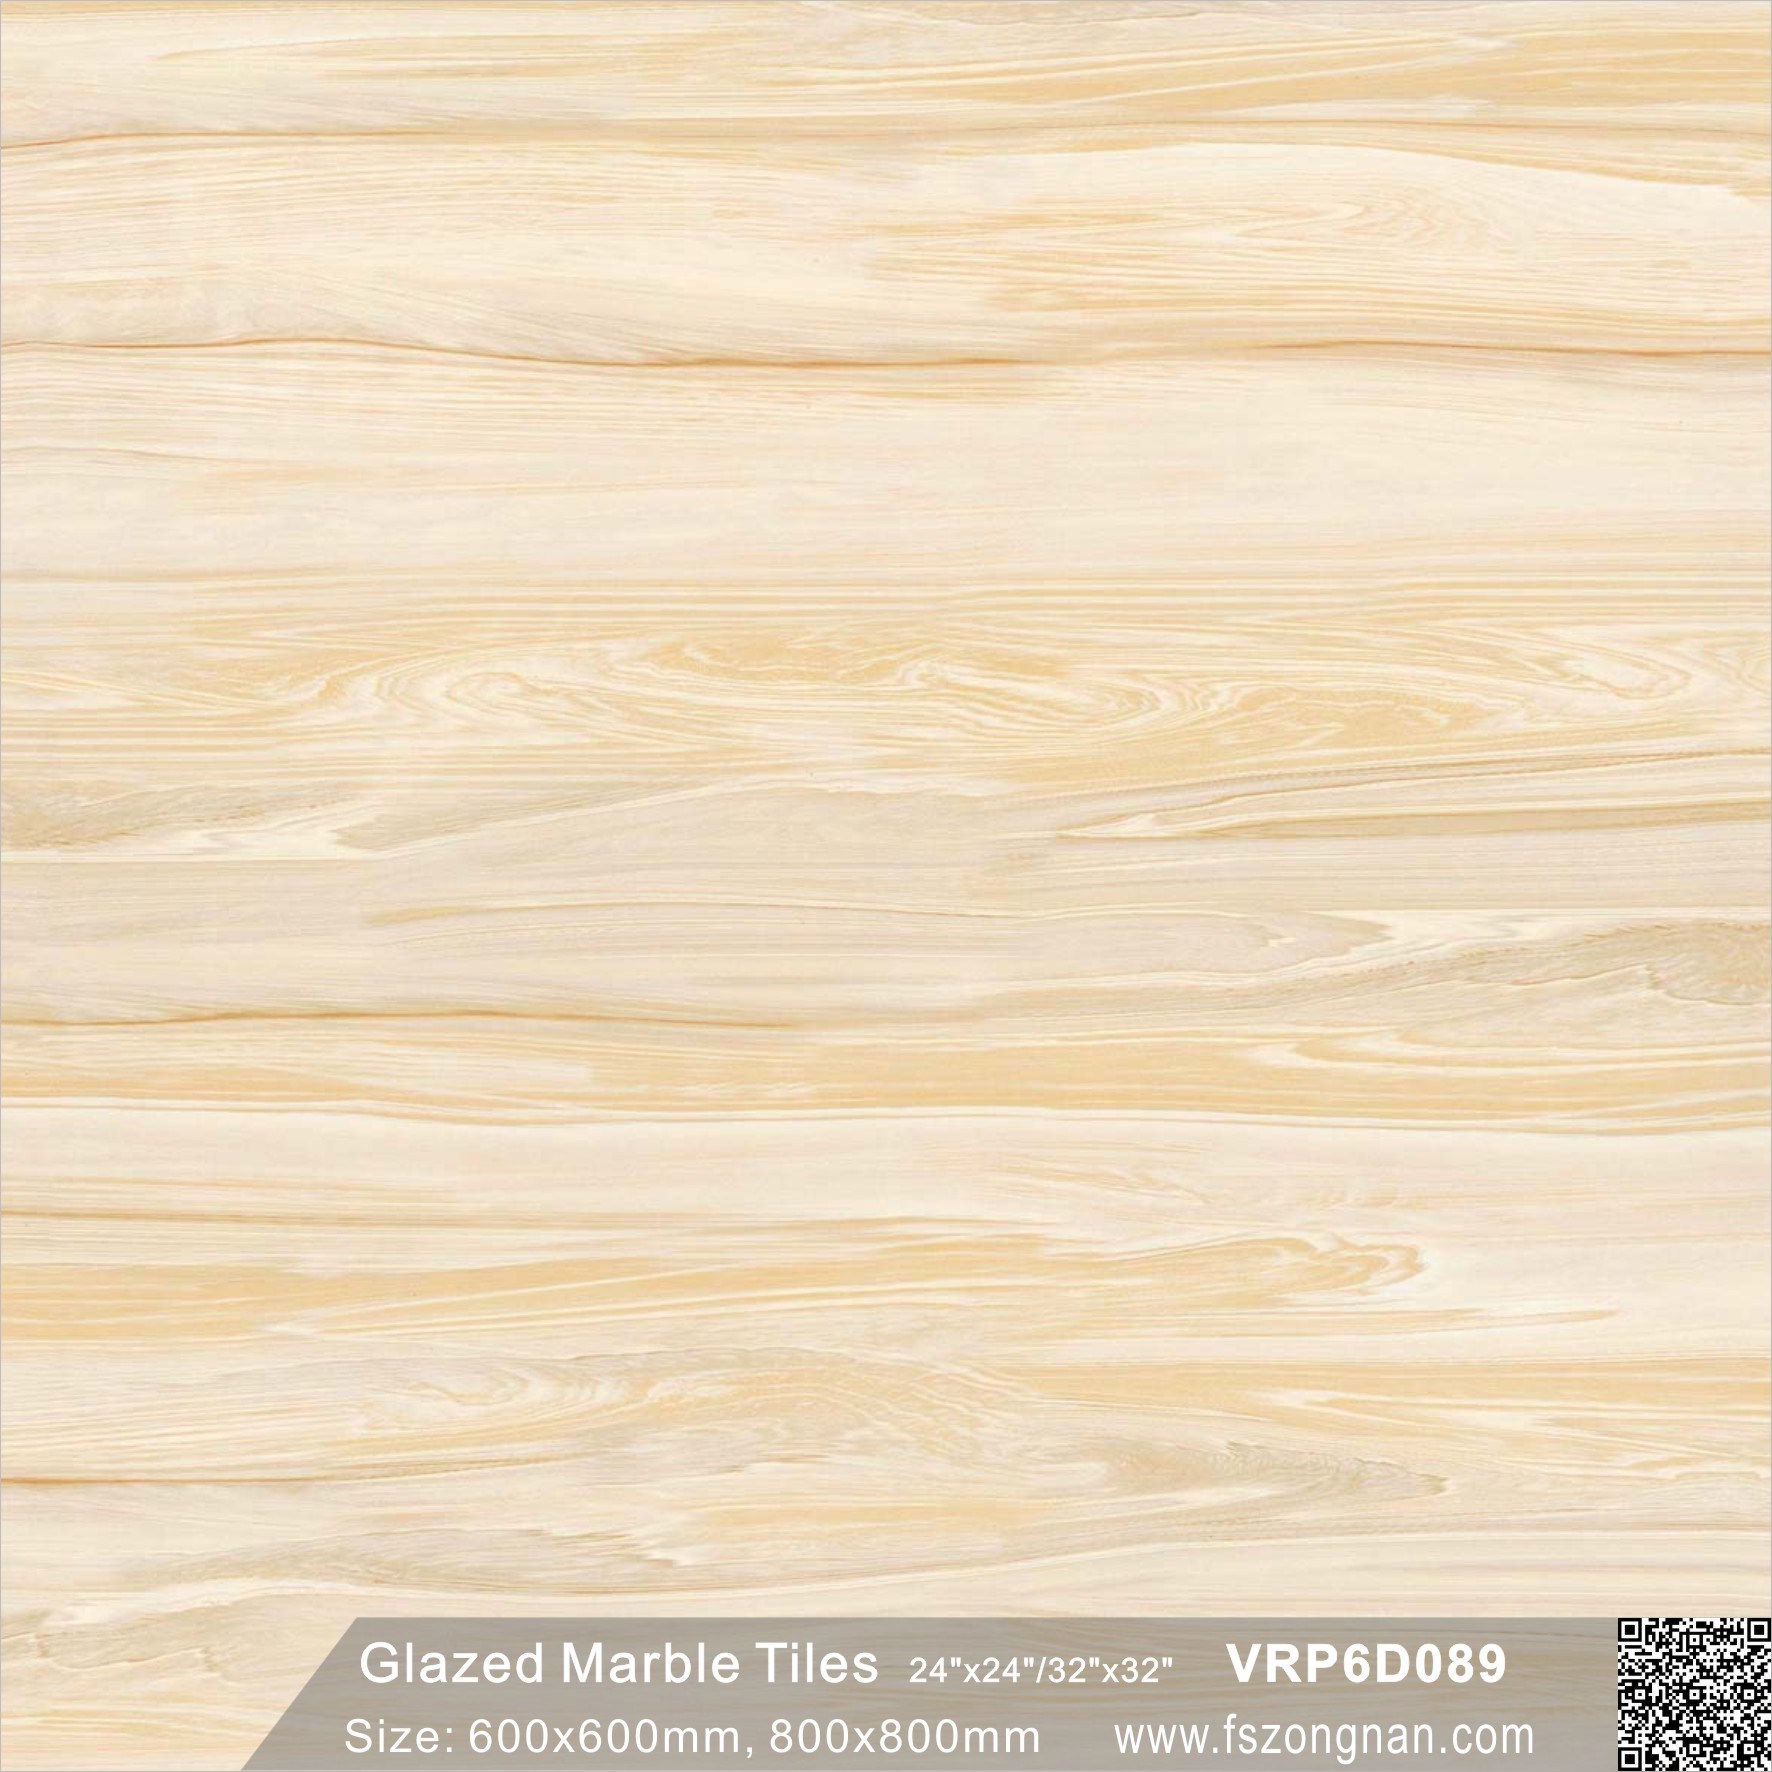 Building Material Good Design Foshan Glazed Polished Flooring Tile (600X600mm, VRP6D089)